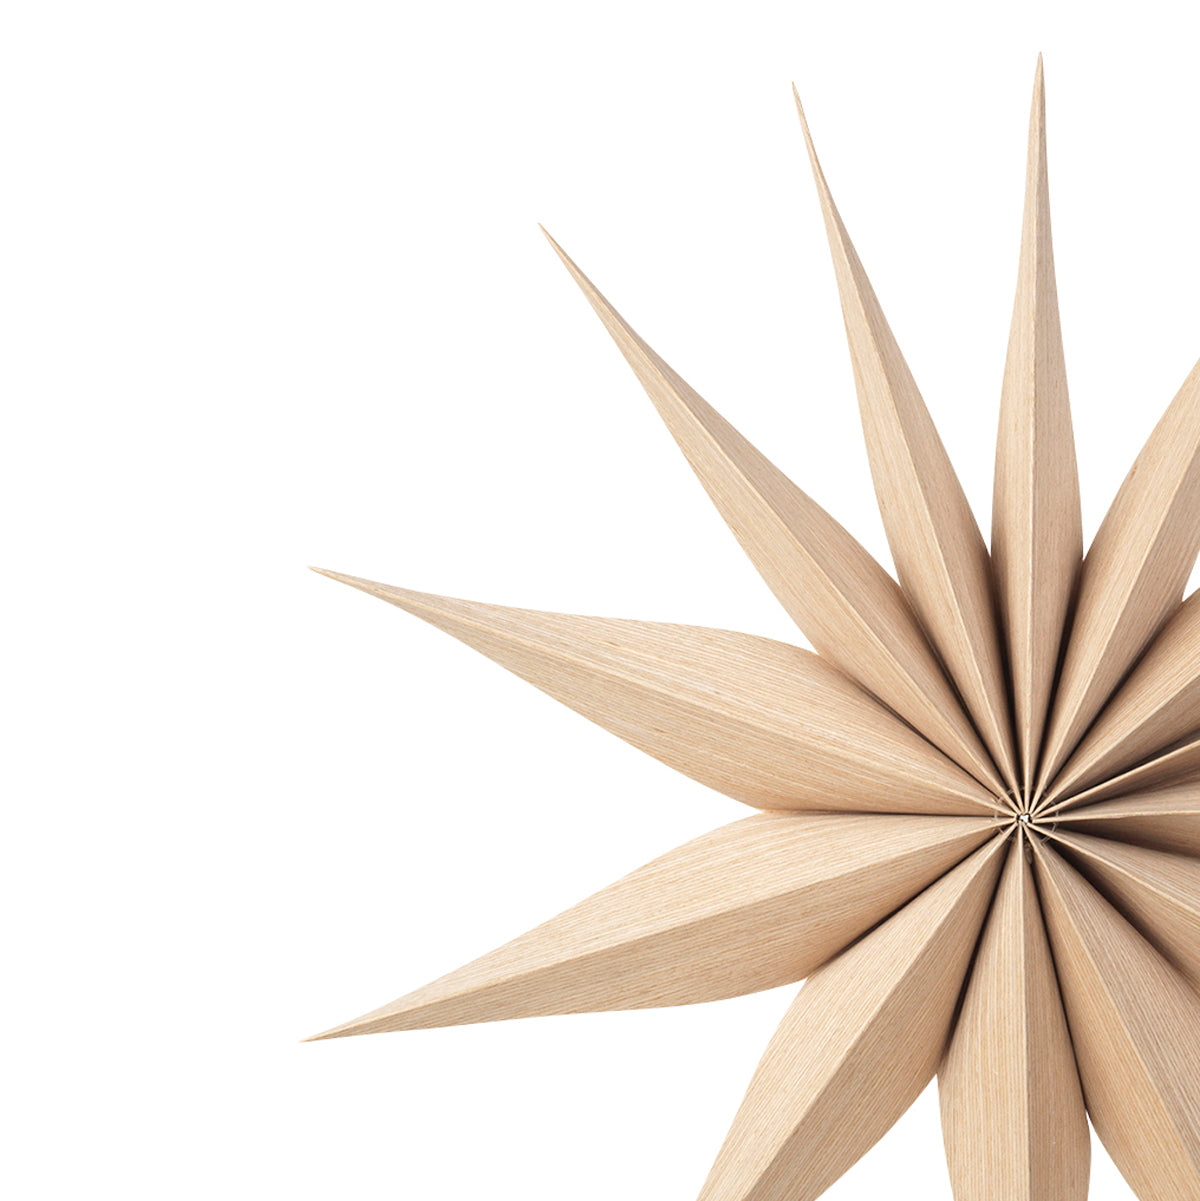 Wooden Star Decoration Venok Medium - Natural